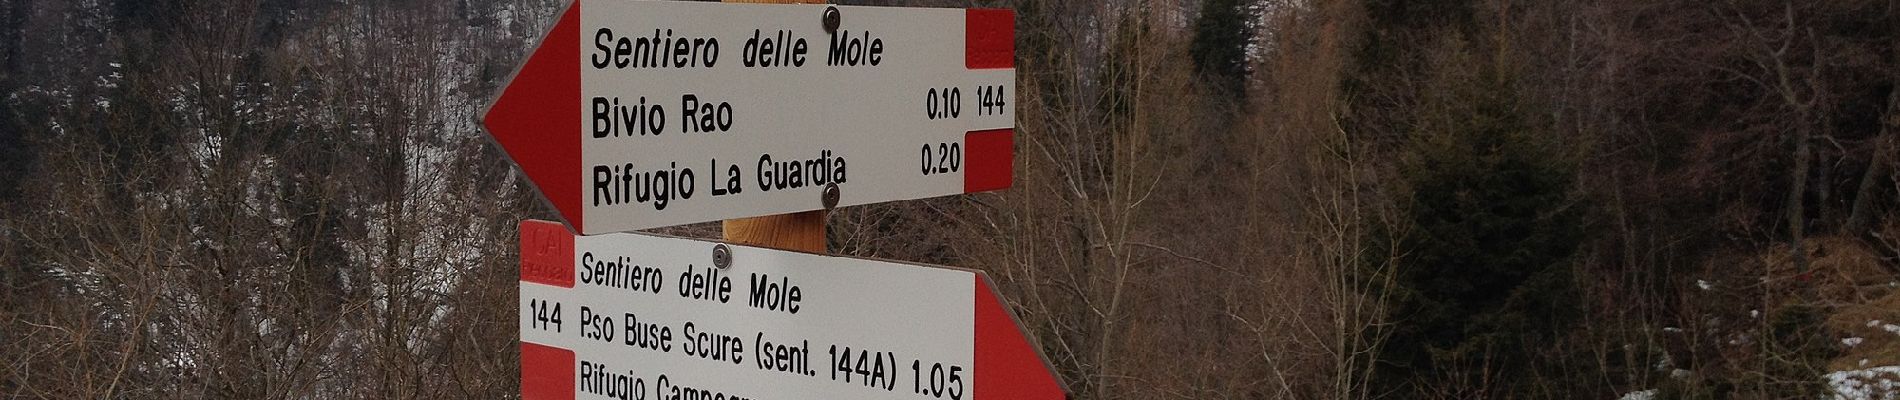 Trail On foot Recoaro Terme - Anello Ecoturistico Piccole Dolomiti 004 - Photo